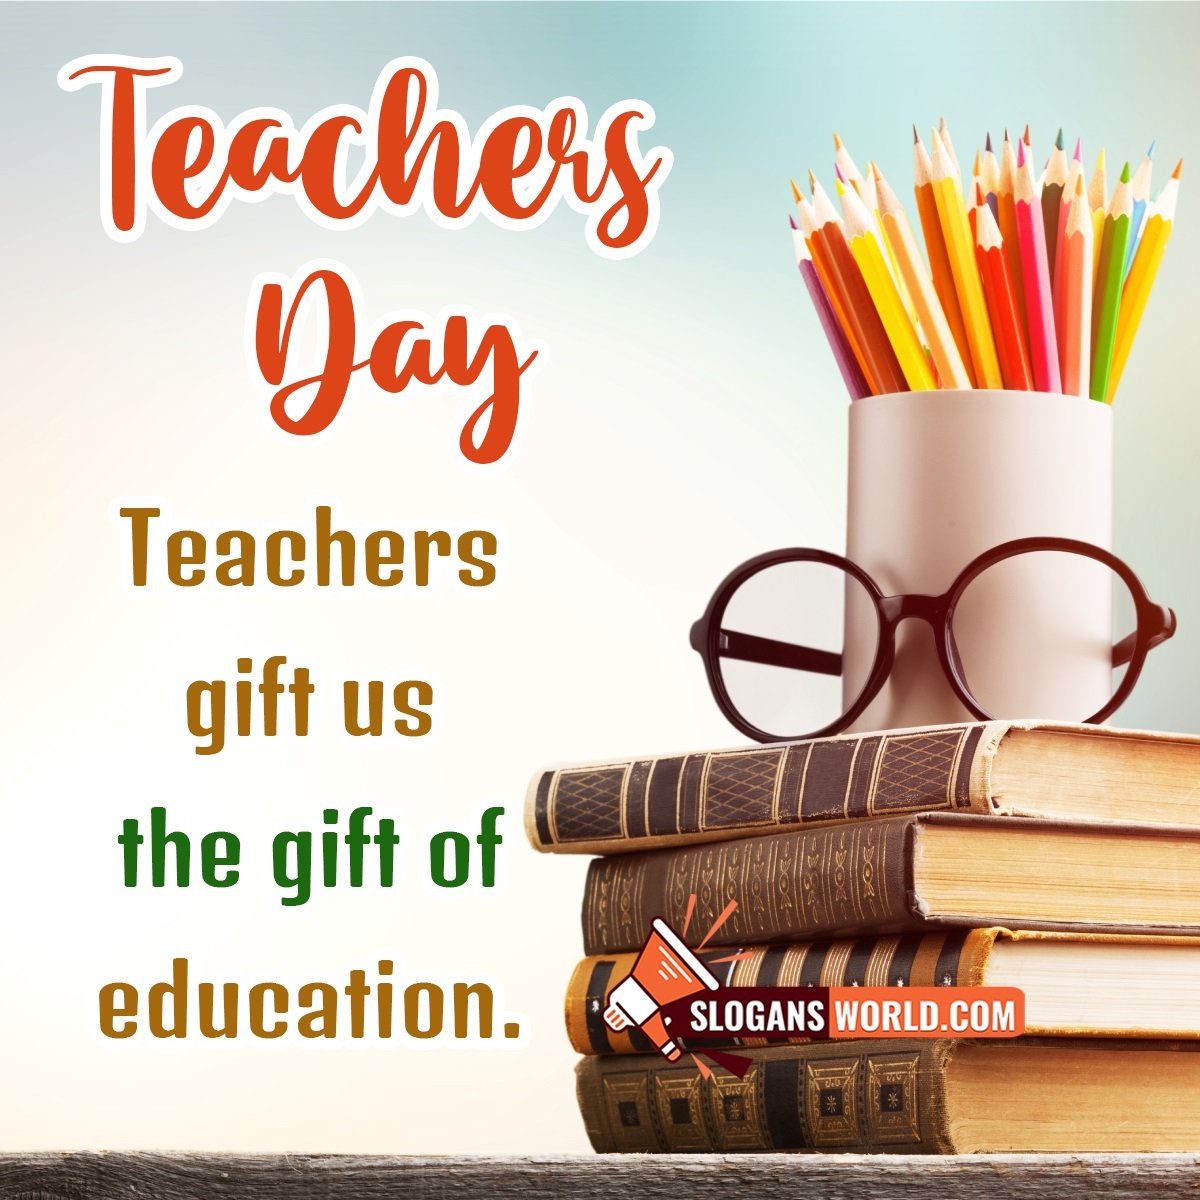 Slogan On Teachers’ Day